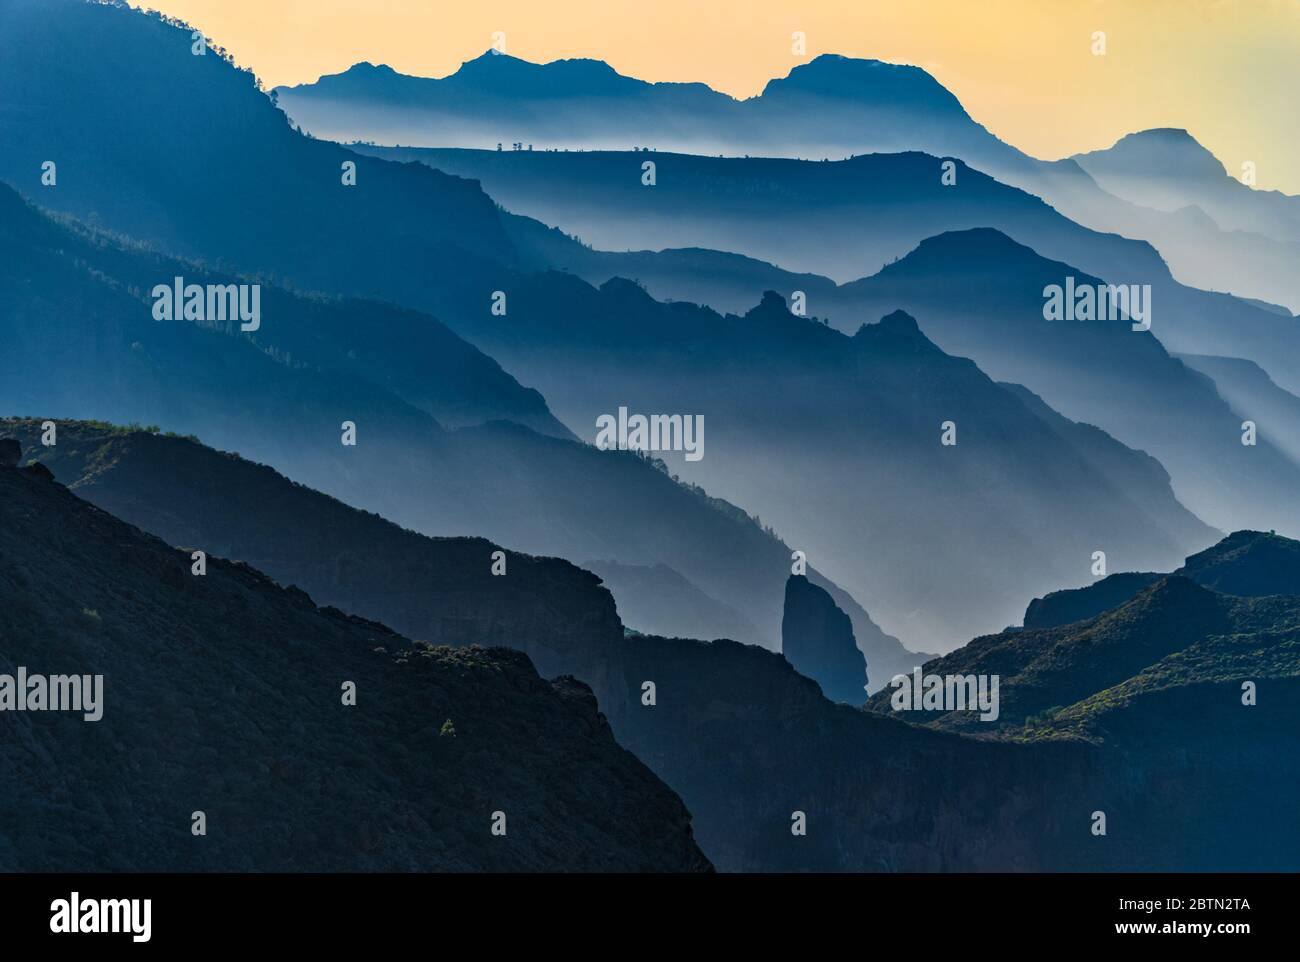 punto de fuga de las montañas de la cresta de gran canaria tiro desde el punto de vista de roca de roque nublo Foto de stock